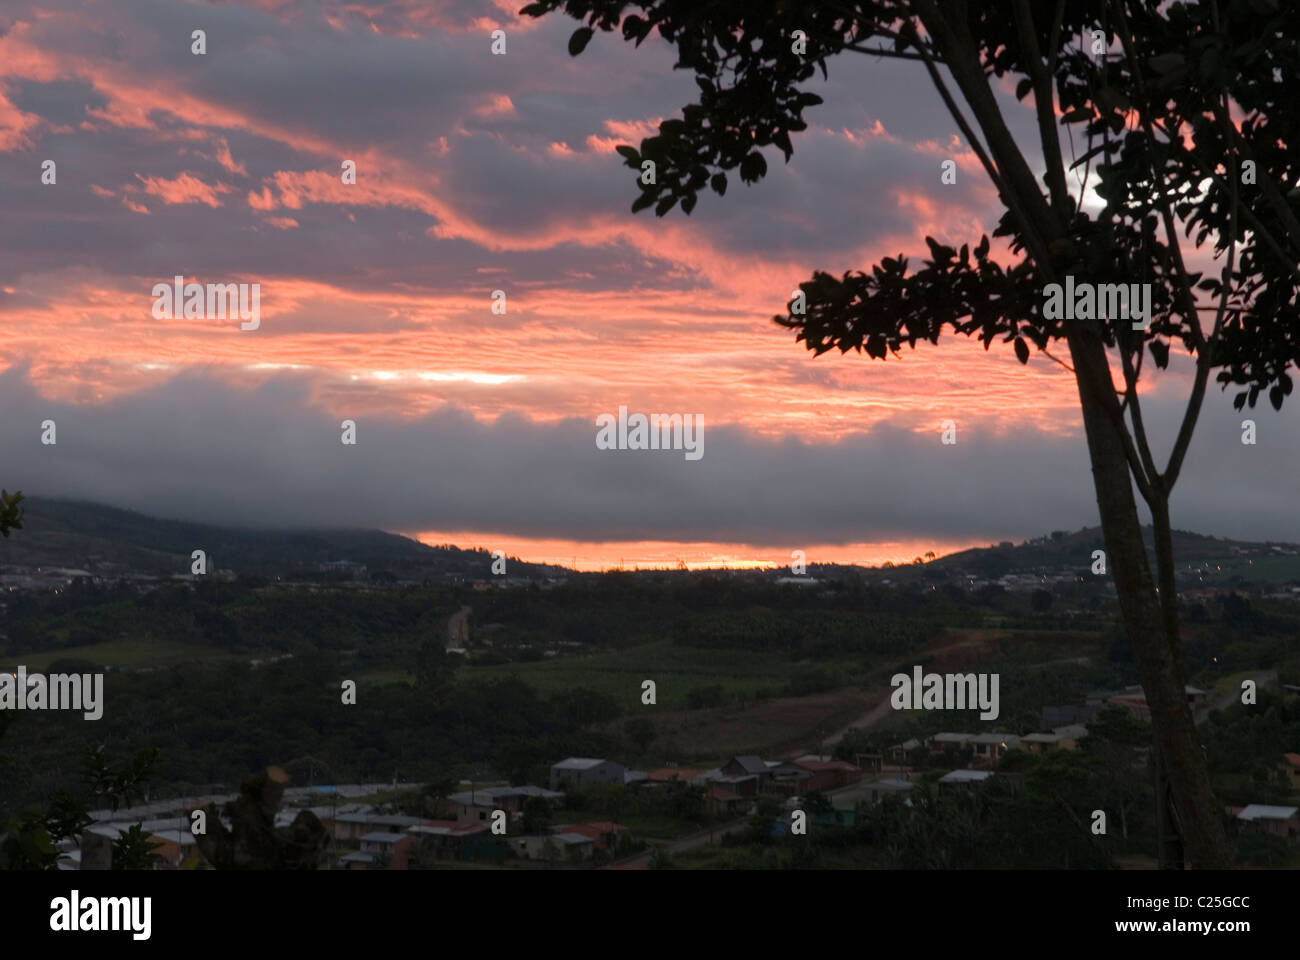 Sunset over San Ramon, Costa Rica Stock Photo